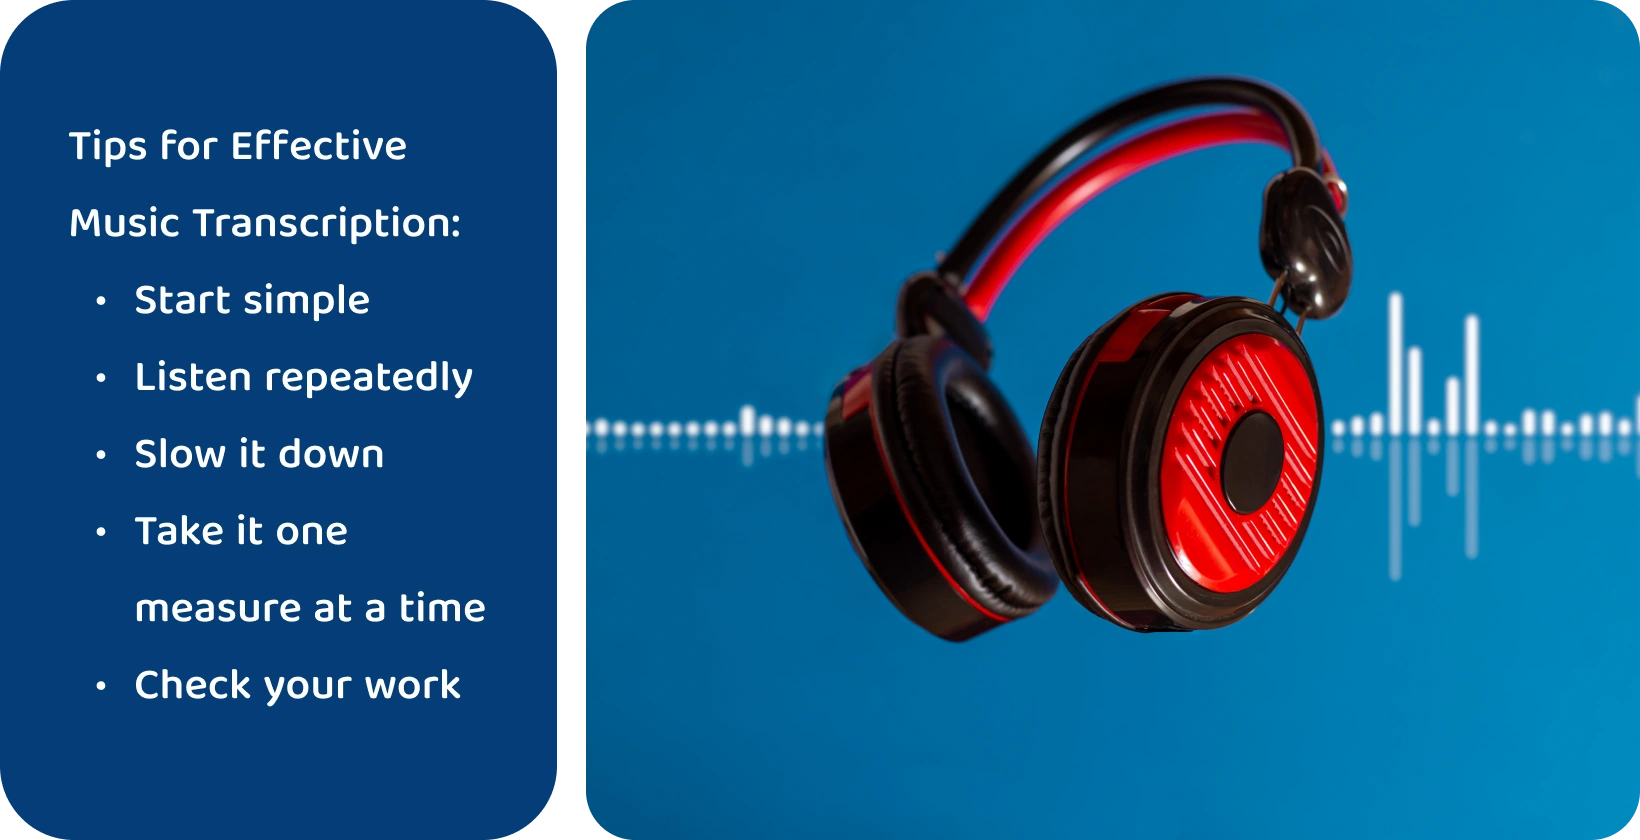 Kuulokkeet aaltomuototaustaa vasten, jotka edustavat työkaluja musiikin transkription parantamiseen kohdennetun ja toistuvan kuuntelun avulla.